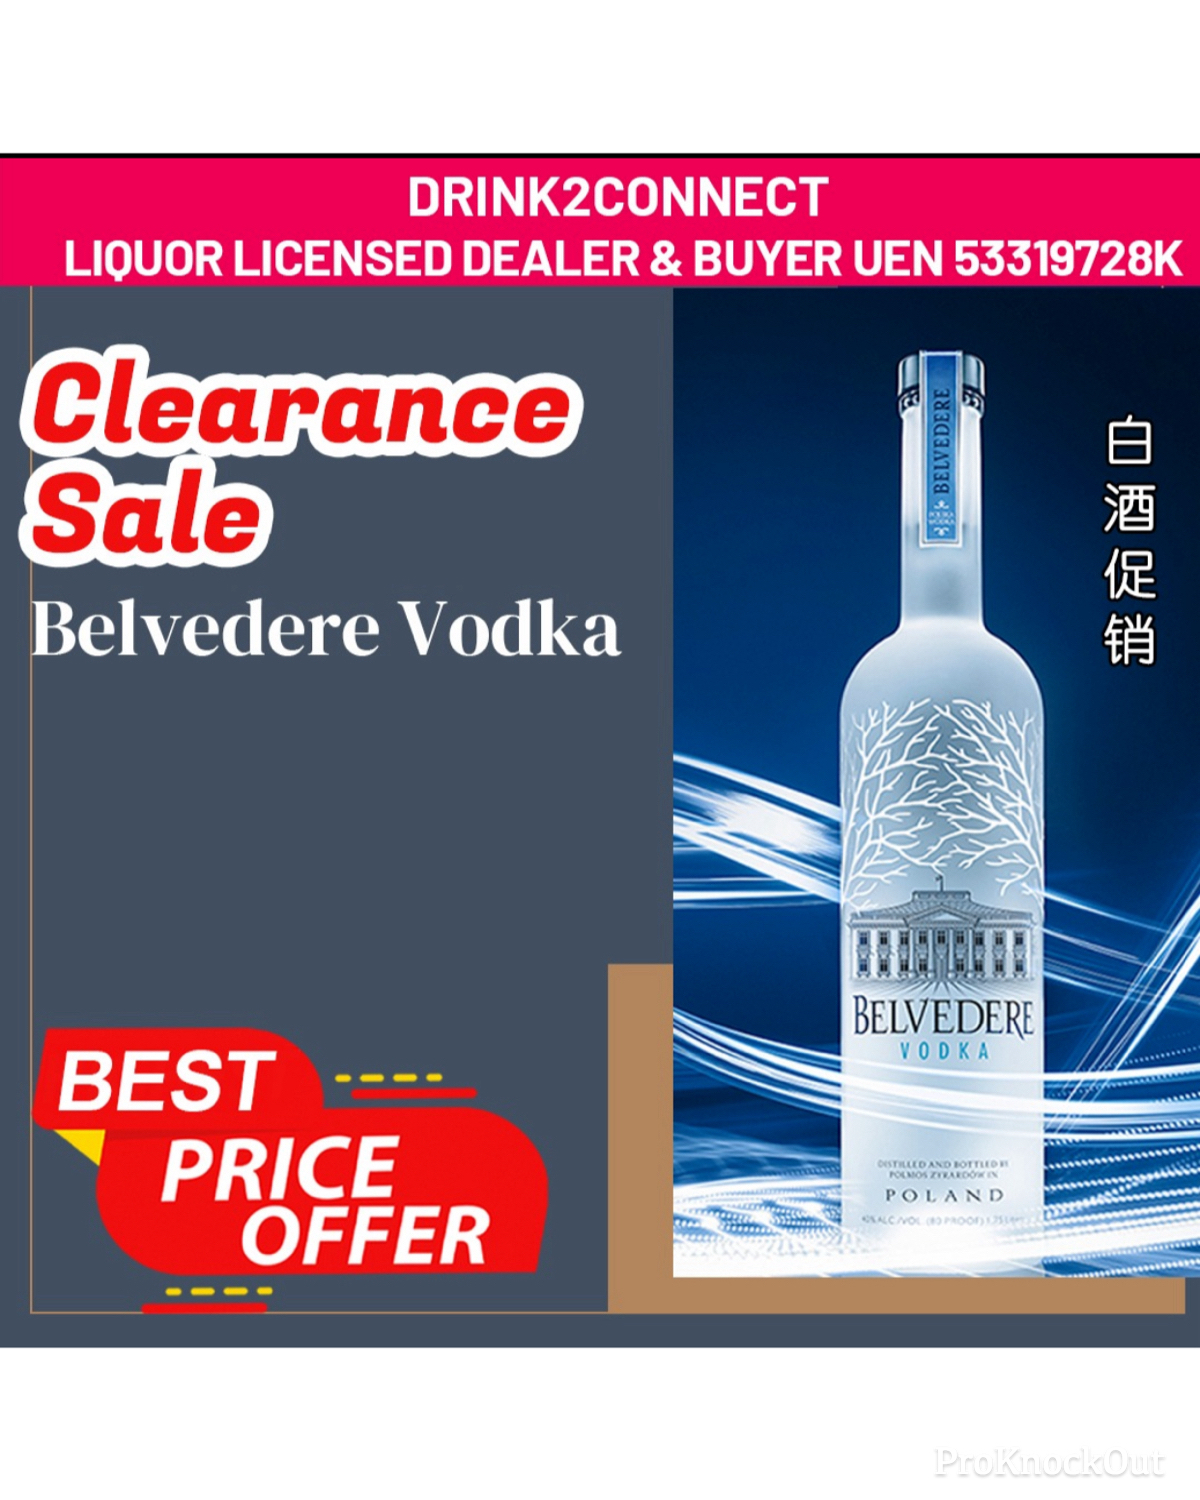 700ml Belvedere Vodka/Vodka Sale Online/Vodka Price Online